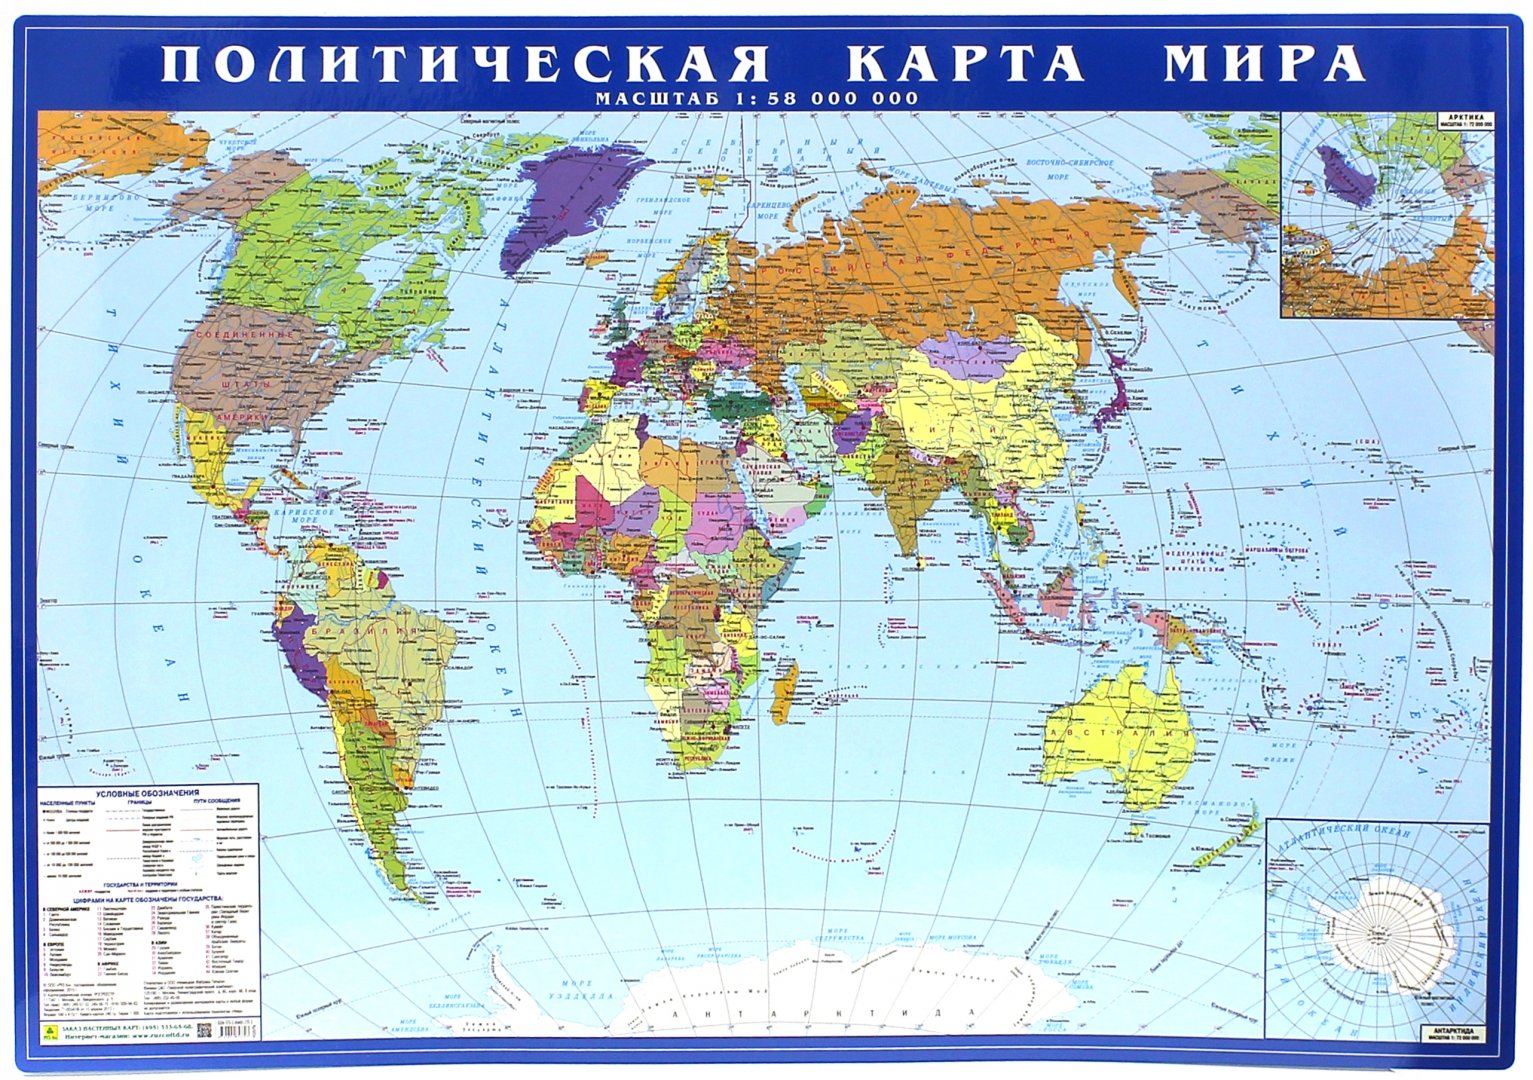 Картографическая карта мира